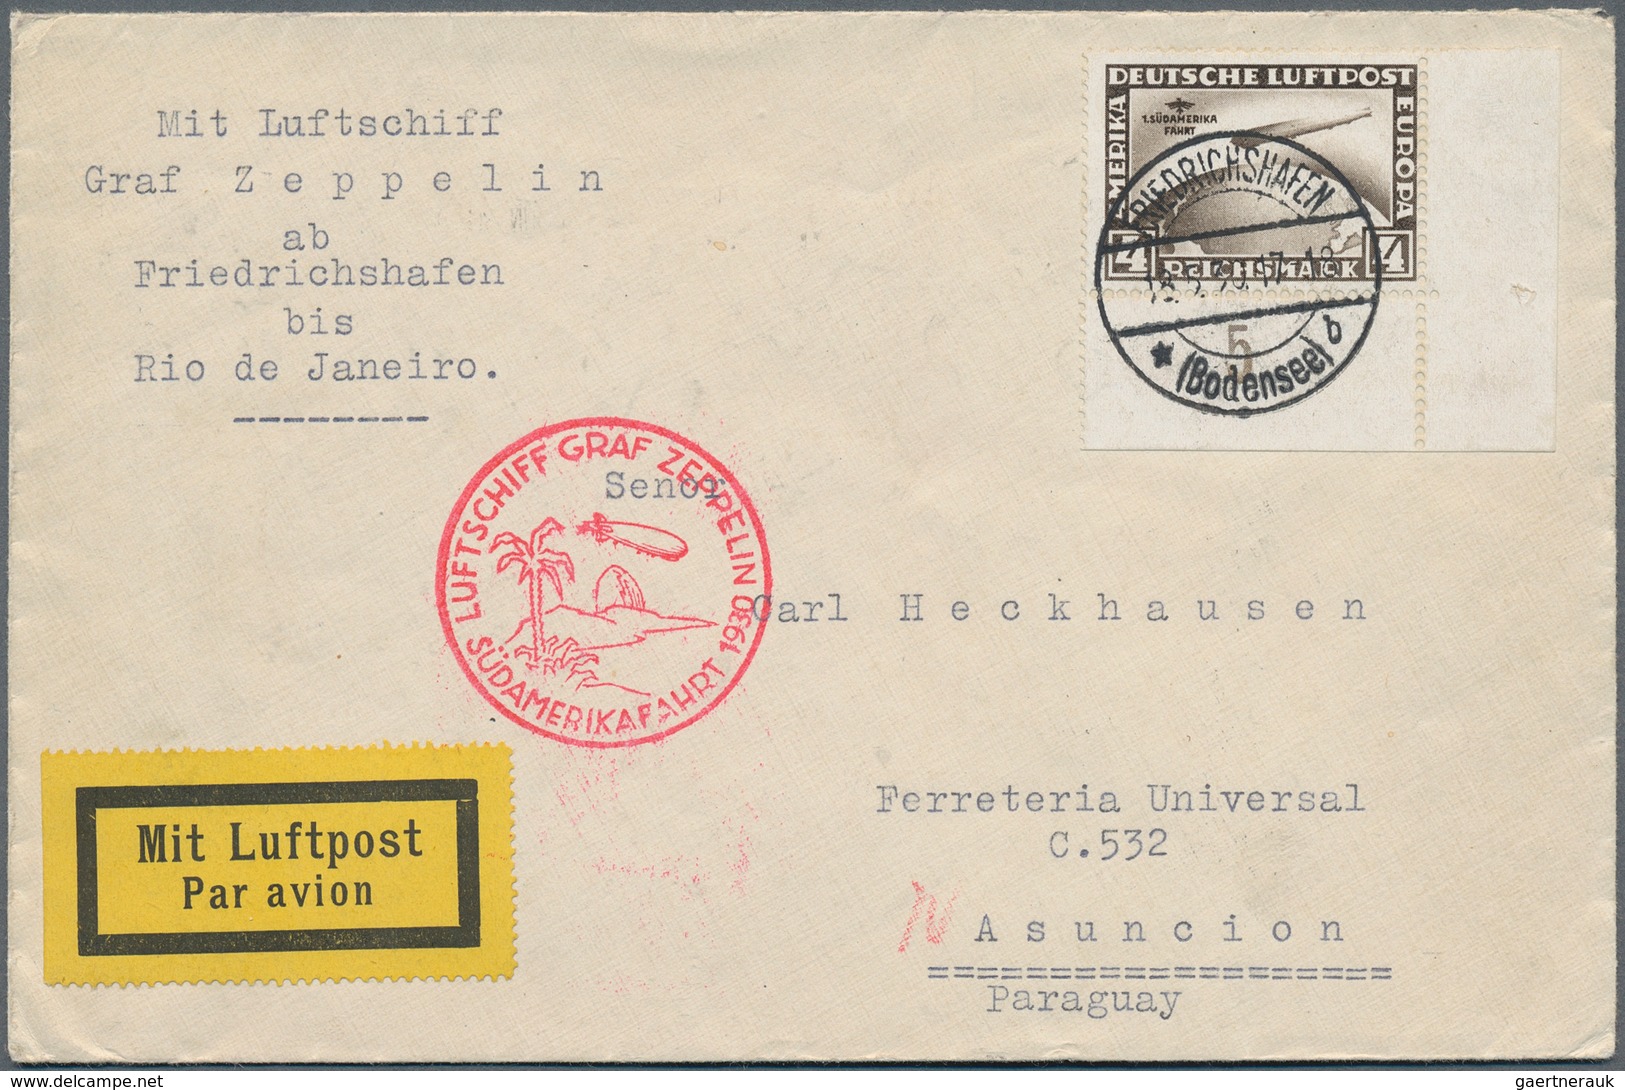 24841 Zeppelinpost Deutschland: 1912/1936, umfangreicher Sammlungsbestand inkl. etwas Flugpost mit ca. 85